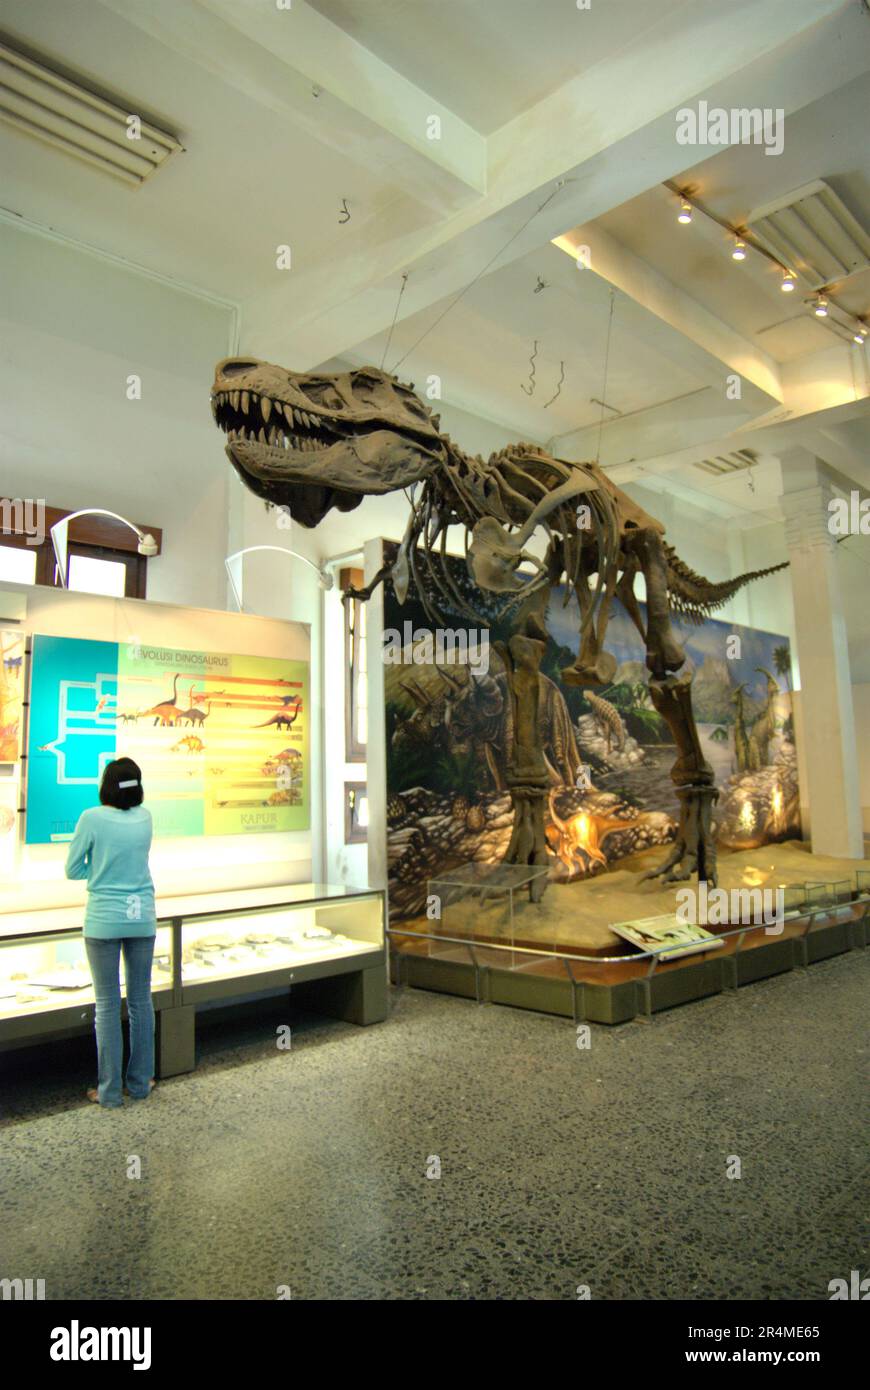 Una donna visitatrice sta leggendo informazioni su pannelli di fronte alla ricostruzione di un Tyrannosaurus rex al Museo Geologi (Museo di Geologia) a Bandung, Giava Occidentale, Indonesia. Foto Stock